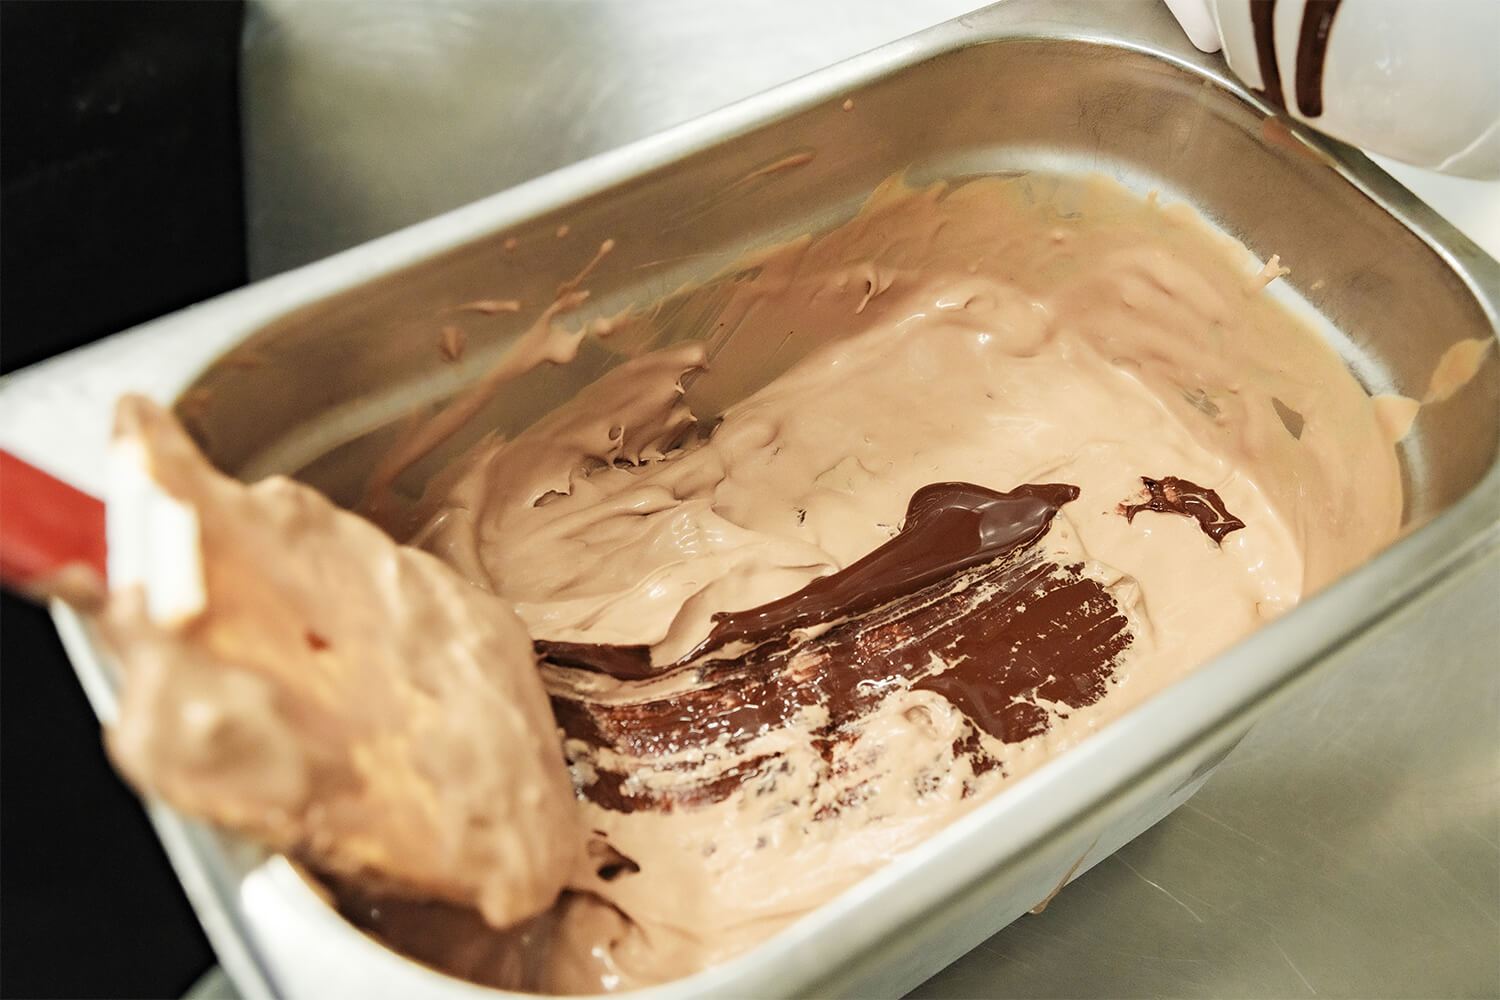 純粋に、最高級のチョコレートを味わえる定番フレーバー「イタリアンチョコレート」